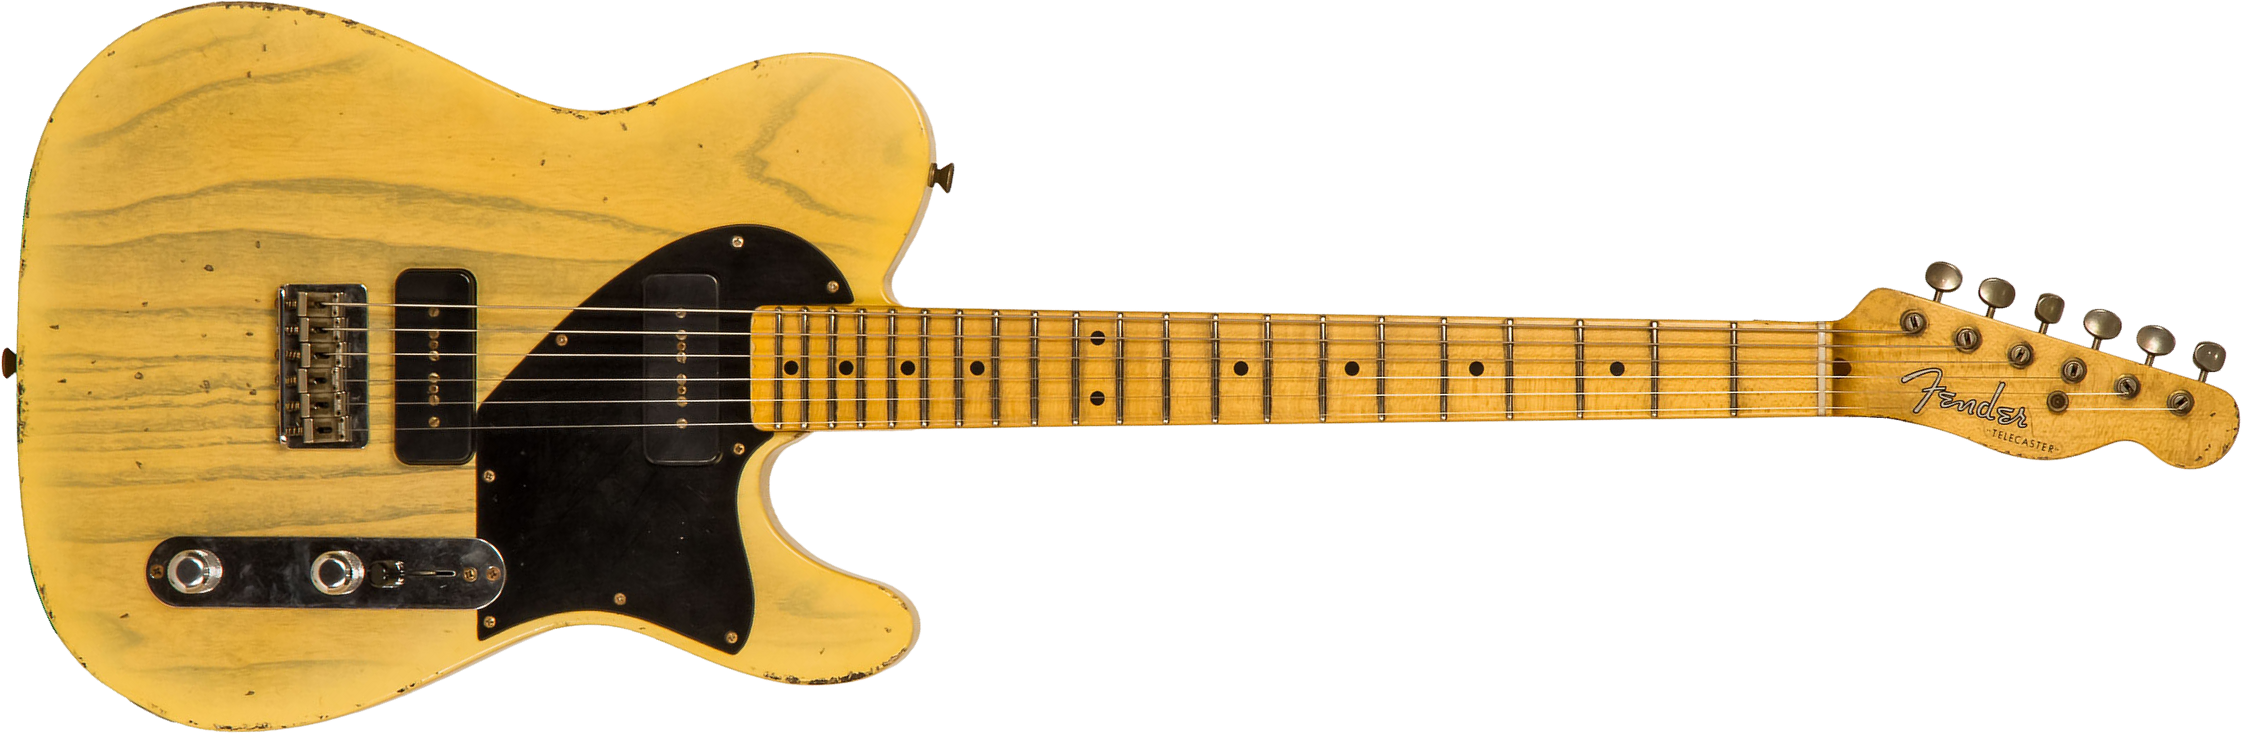 Fender Custom Shop Tele 1950 Masterbuilt J.smith Mn #r111000 - Relic Nocaster Blonde - Guitare Électrique Forme Tel - Main picture